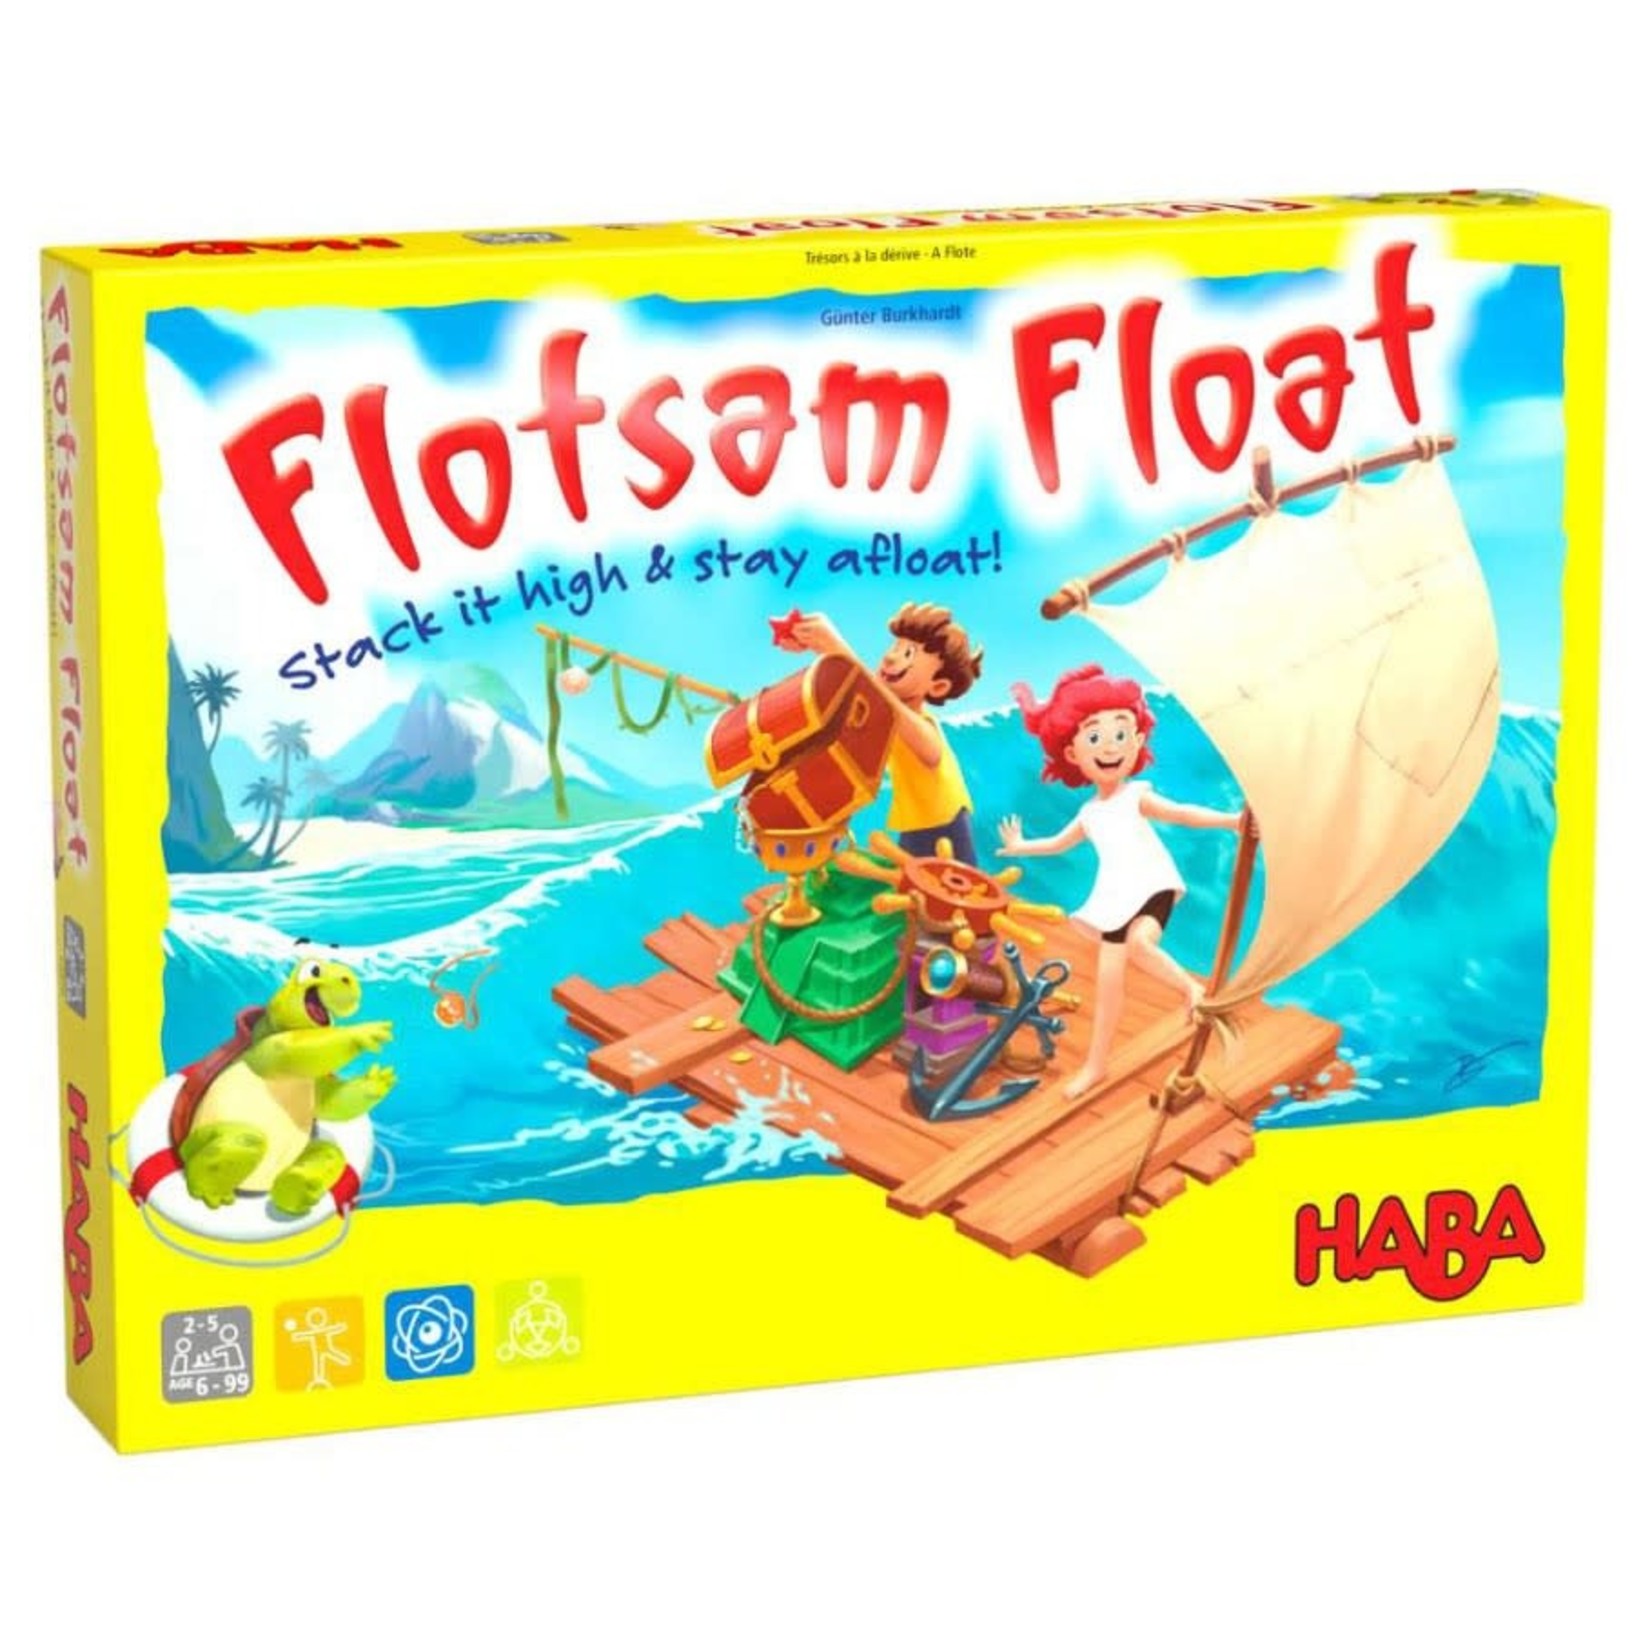 HABA Flotsam Float